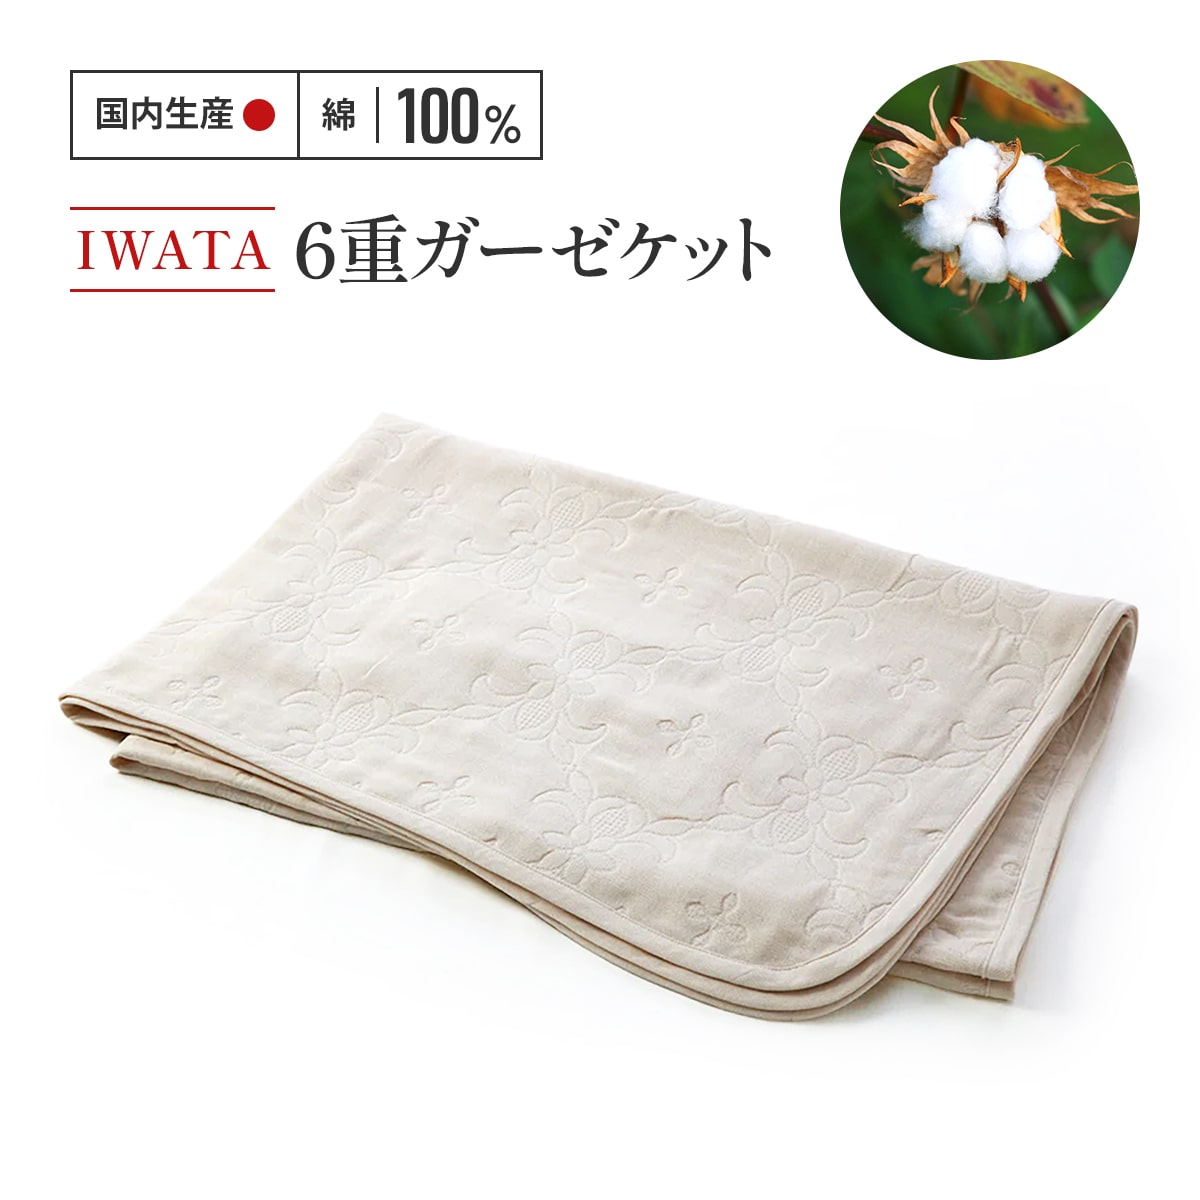 IWATA 6重ガーゼケット 毛布 ブランケット タオルケット